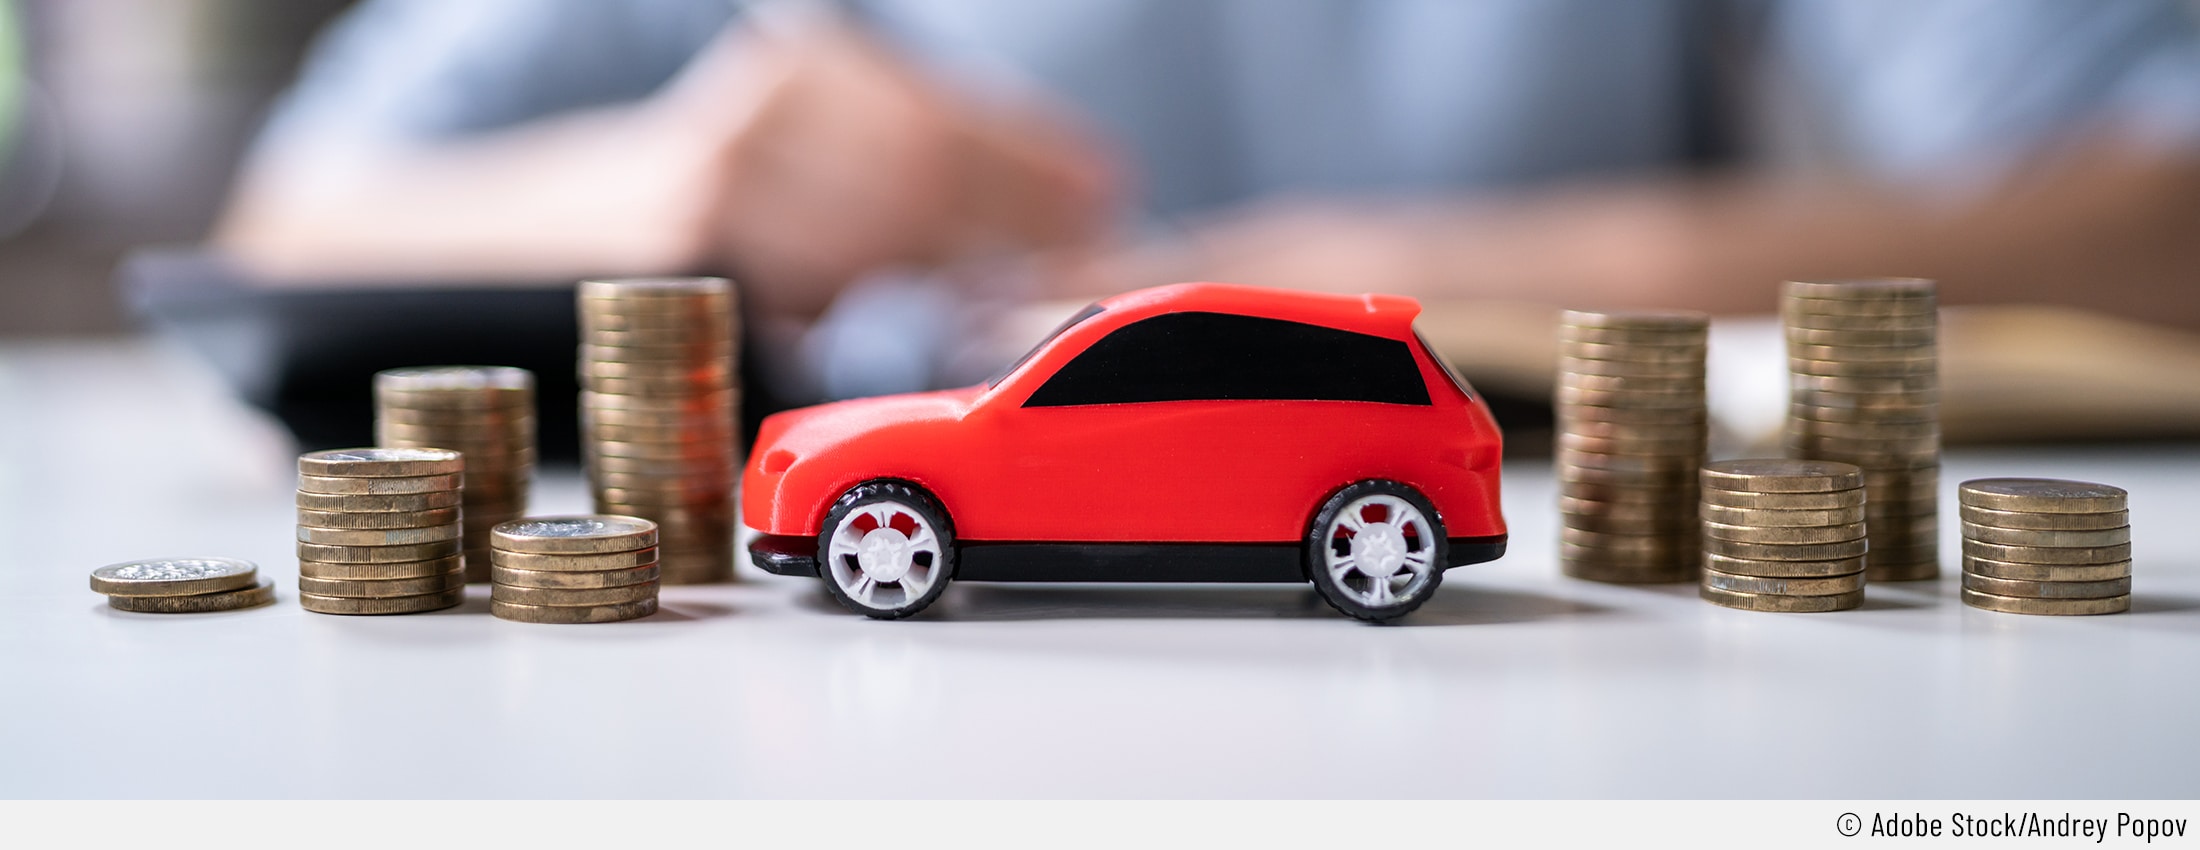 Auf dem Bild sind mehrere Münzstapel neben einem roten Spielzeugauto zu sehen. Das soll die Unterhaltskosten eines Autos verbildlichen.